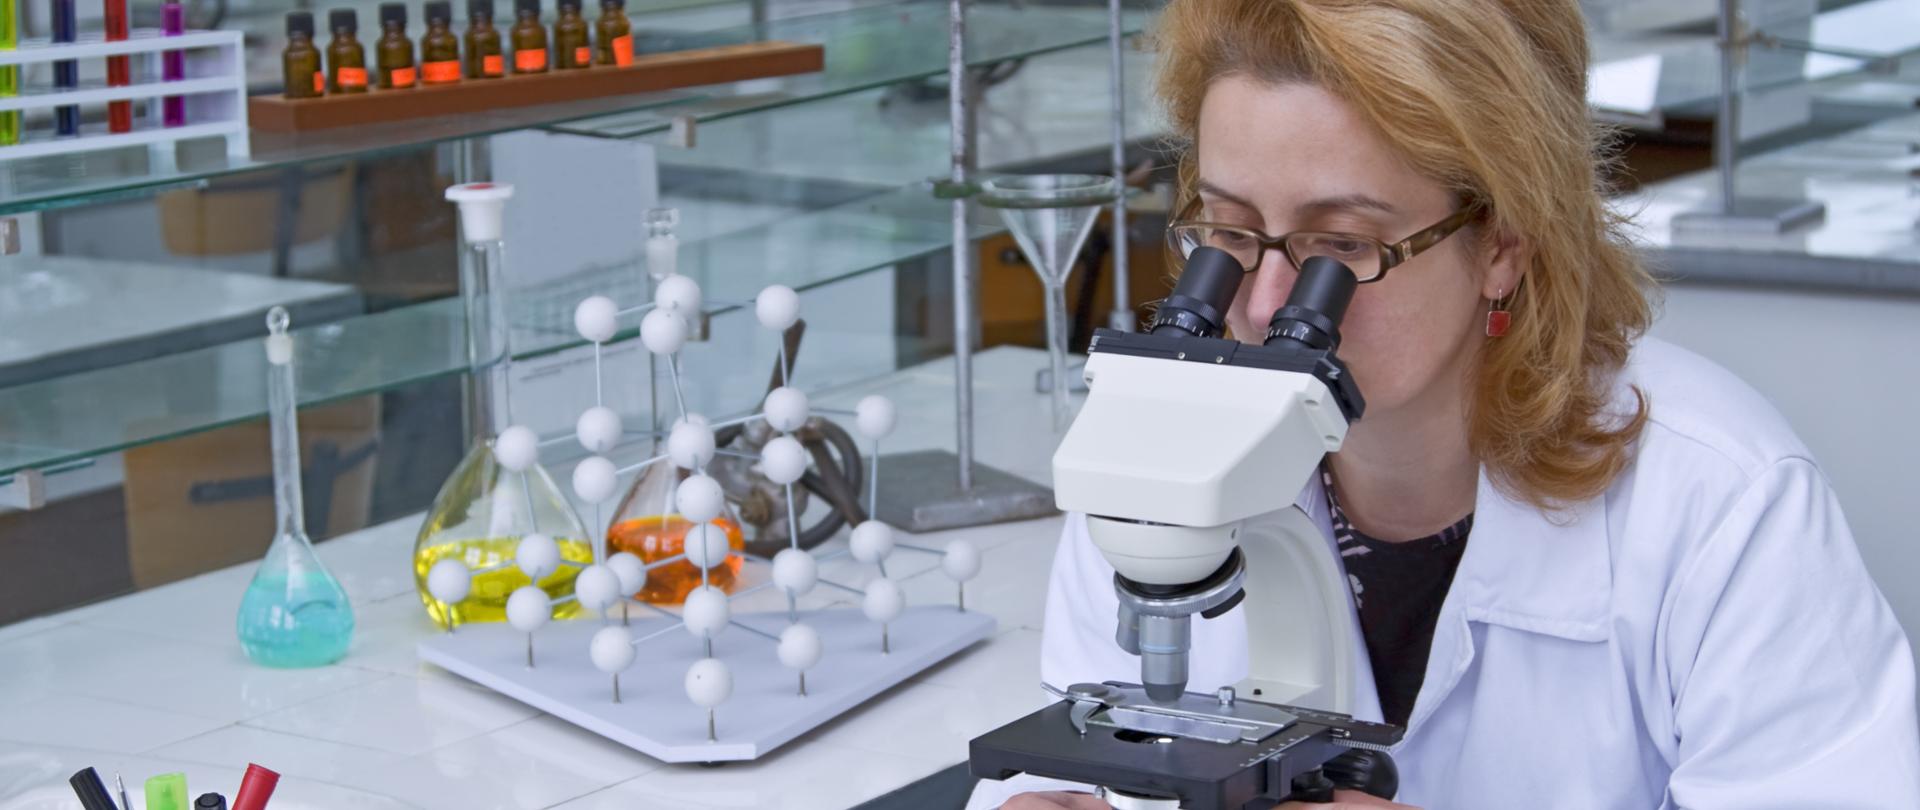 Kobieta w białym fartuchu patrzy przez mikroskop.